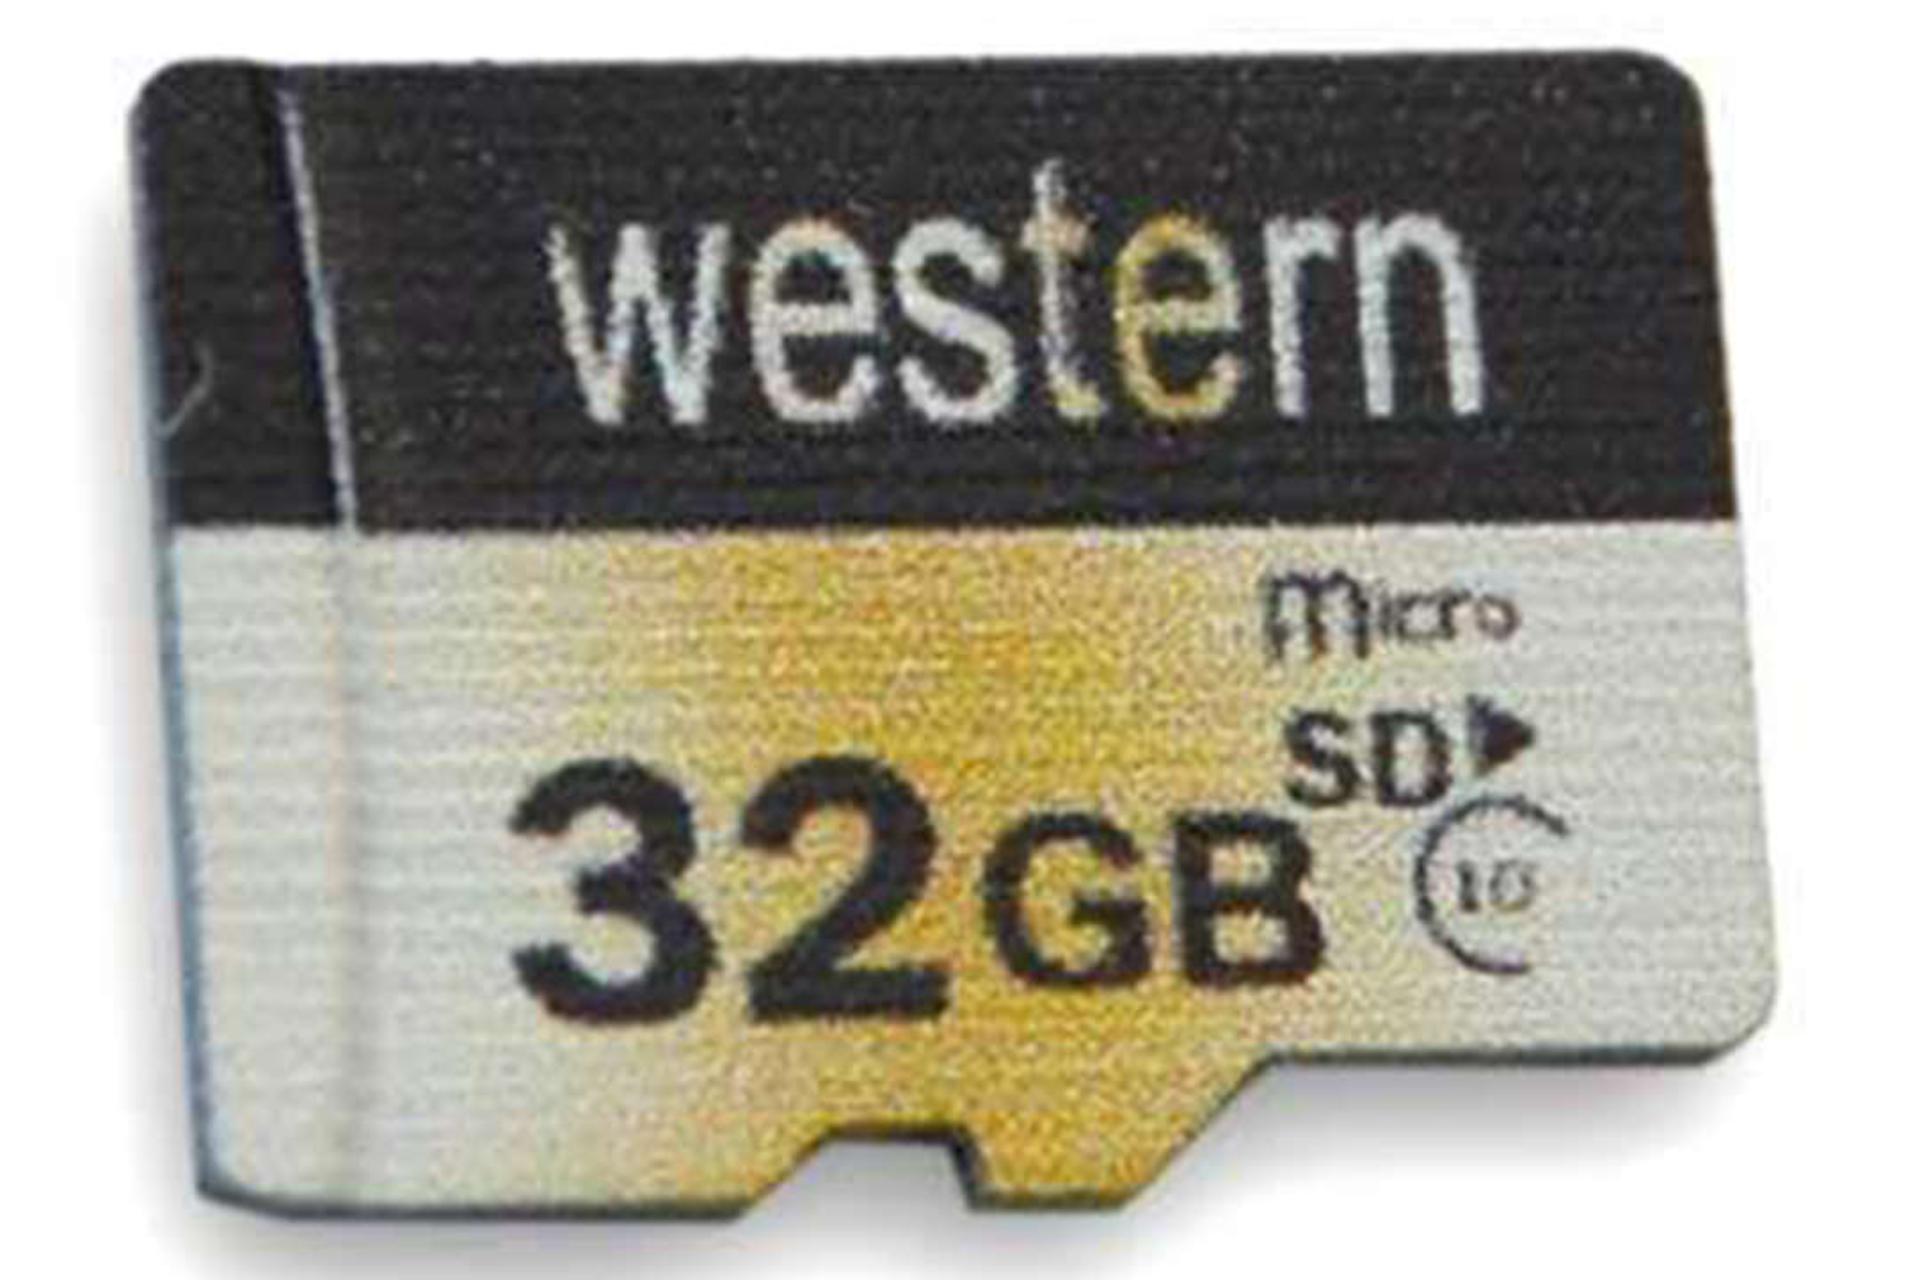 وسترن microSDHC با ظرفیت 32 گیگابایت کلاس 10